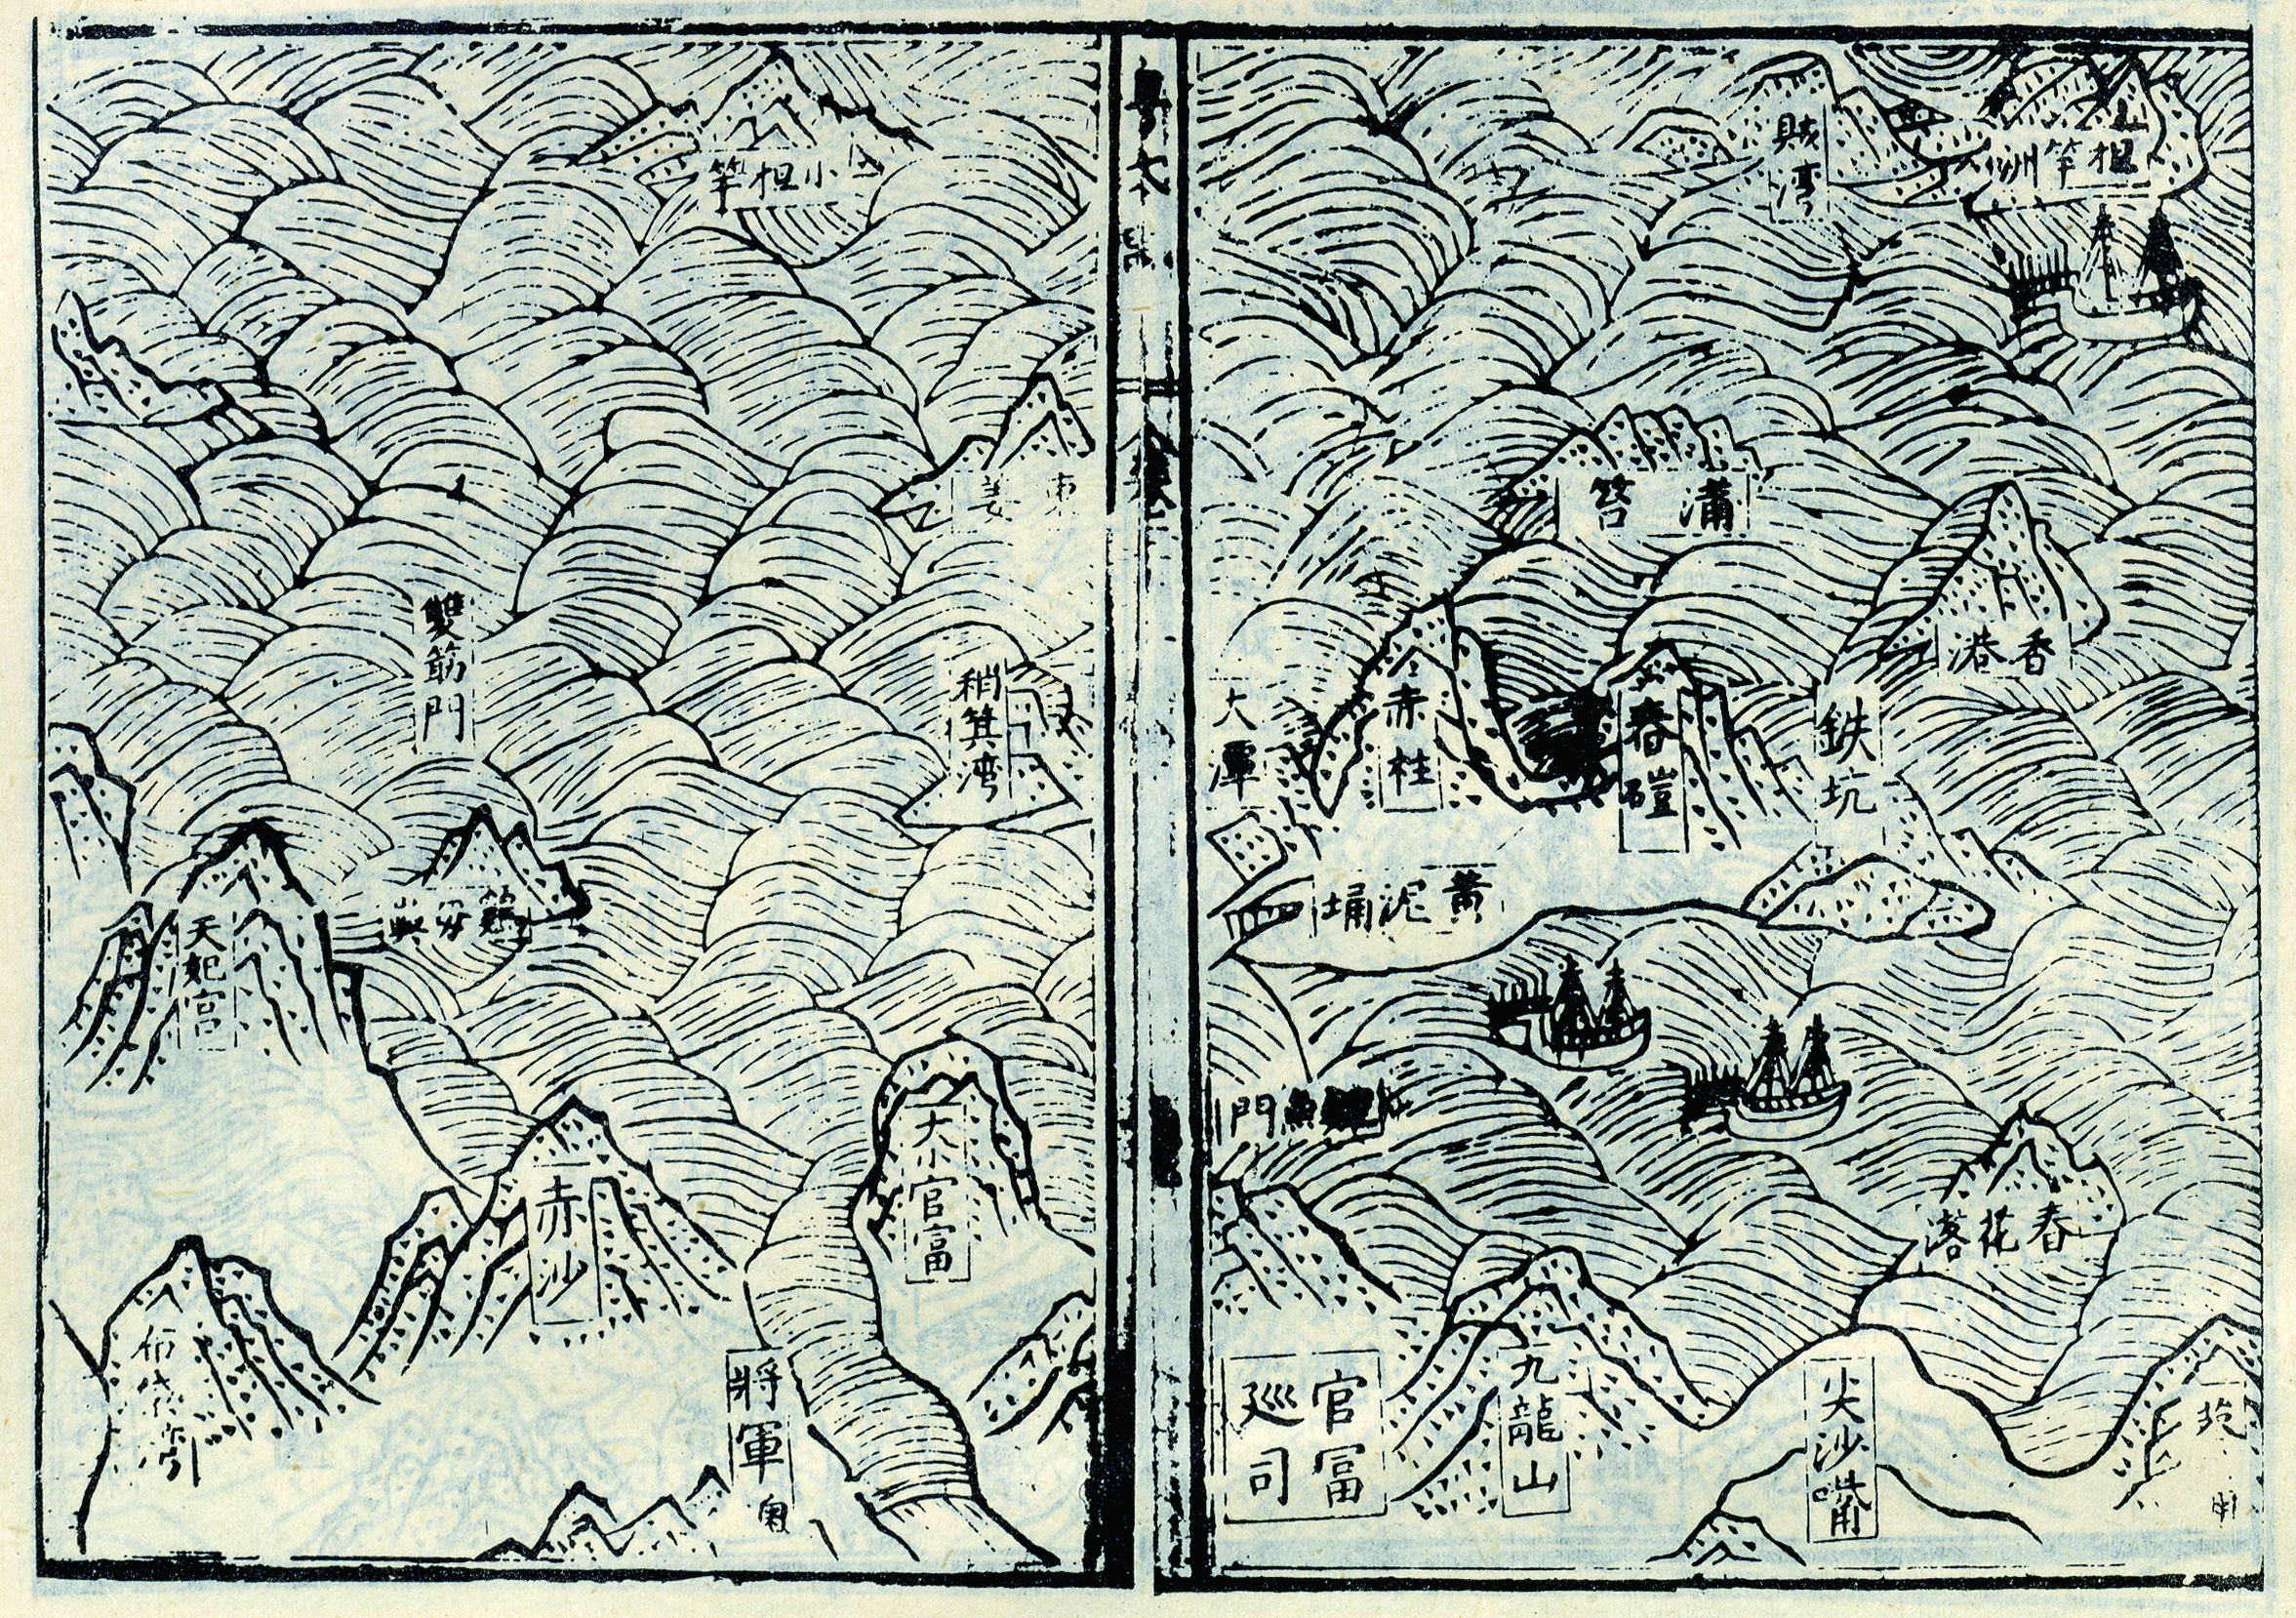 明萬曆二十六年（1598）《粵大記》〈廣東沿海圖〉是典型明代海圖，為「一字式」圖卷，不採用東西南北方位，而以陸為下、海為上的相對方位，從陸上九龍的角度望向香港島、大嶼山，反映傳統中國對待海洋的內陸視野。此圖是現存最早記錄新安縣設置以後狀況的地圖之一，亦是「香港」（約指今日鴨脷洲、香港仔一帶）一名首載於史冊，標有今日香港地區地名70多處，如布袋灣（今布袋澳）、天妃宮（今佛堂門天后古廟，亦稱「大廟」）、將軍澳、大小官富（約在今觀塘）、稍箕灣（今筲箕灣）、官富巡司、尖沙嘴、春花落（今青衣）、黃坭埇（今黃泥涌）、赤柱、蒲苔（今蒲台島）、葵涌等，不少更沿用至今。此圖對香港地區描述詳細準確，為歷代各圖稀見，反映香港地區至明代中葉已有相當發展，並為時人認識。圖中所繪多艘出沒沿海得西洋帆船，亦透露了中西早期接觸的時代背景。